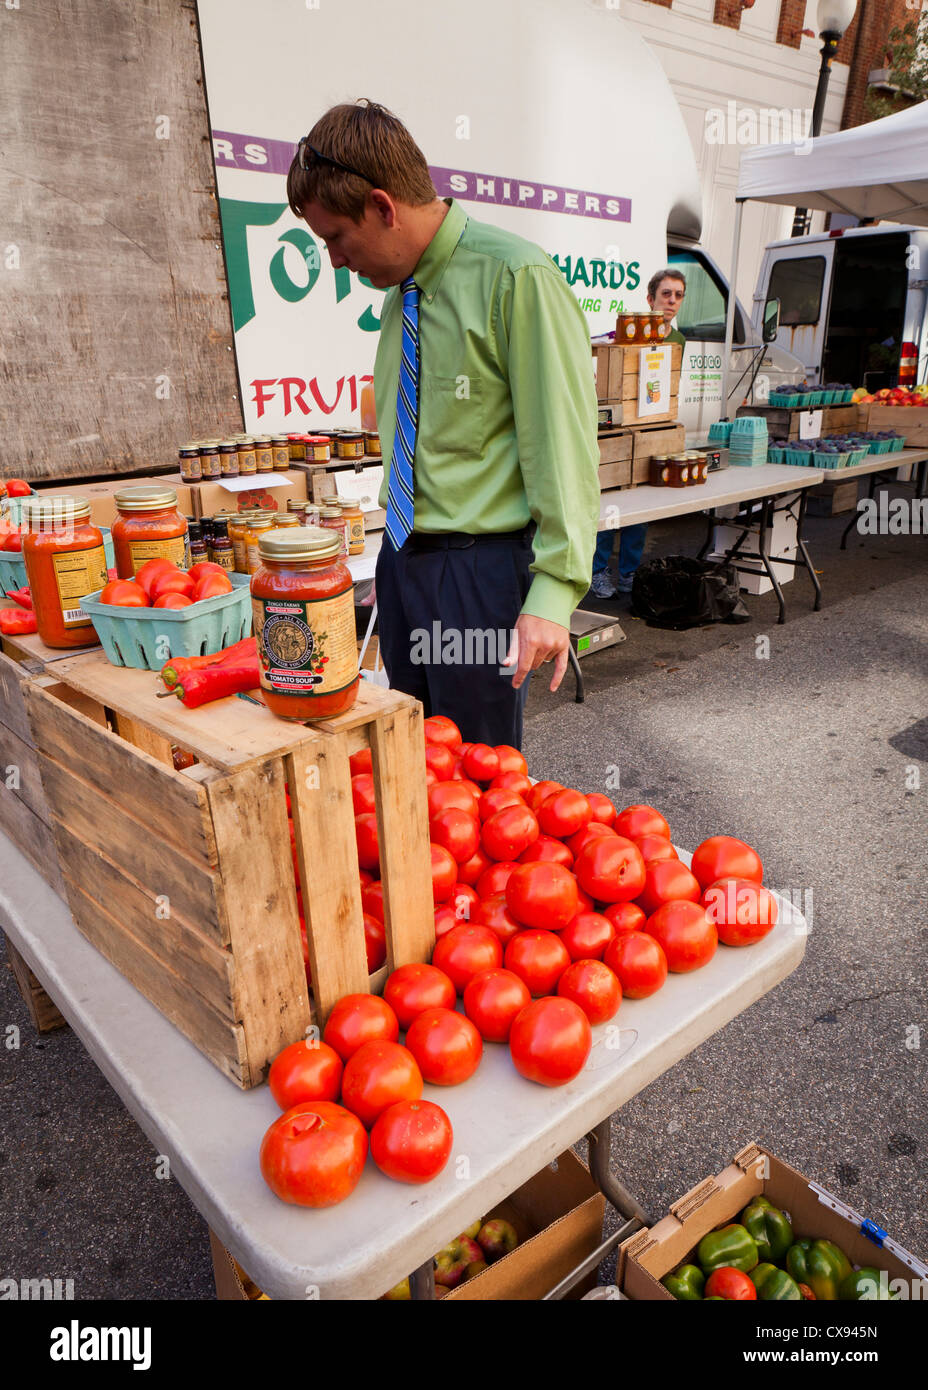 Inspection de l'homme au marché de producteurs de tomates - Washington, DC USA Banque D'Images